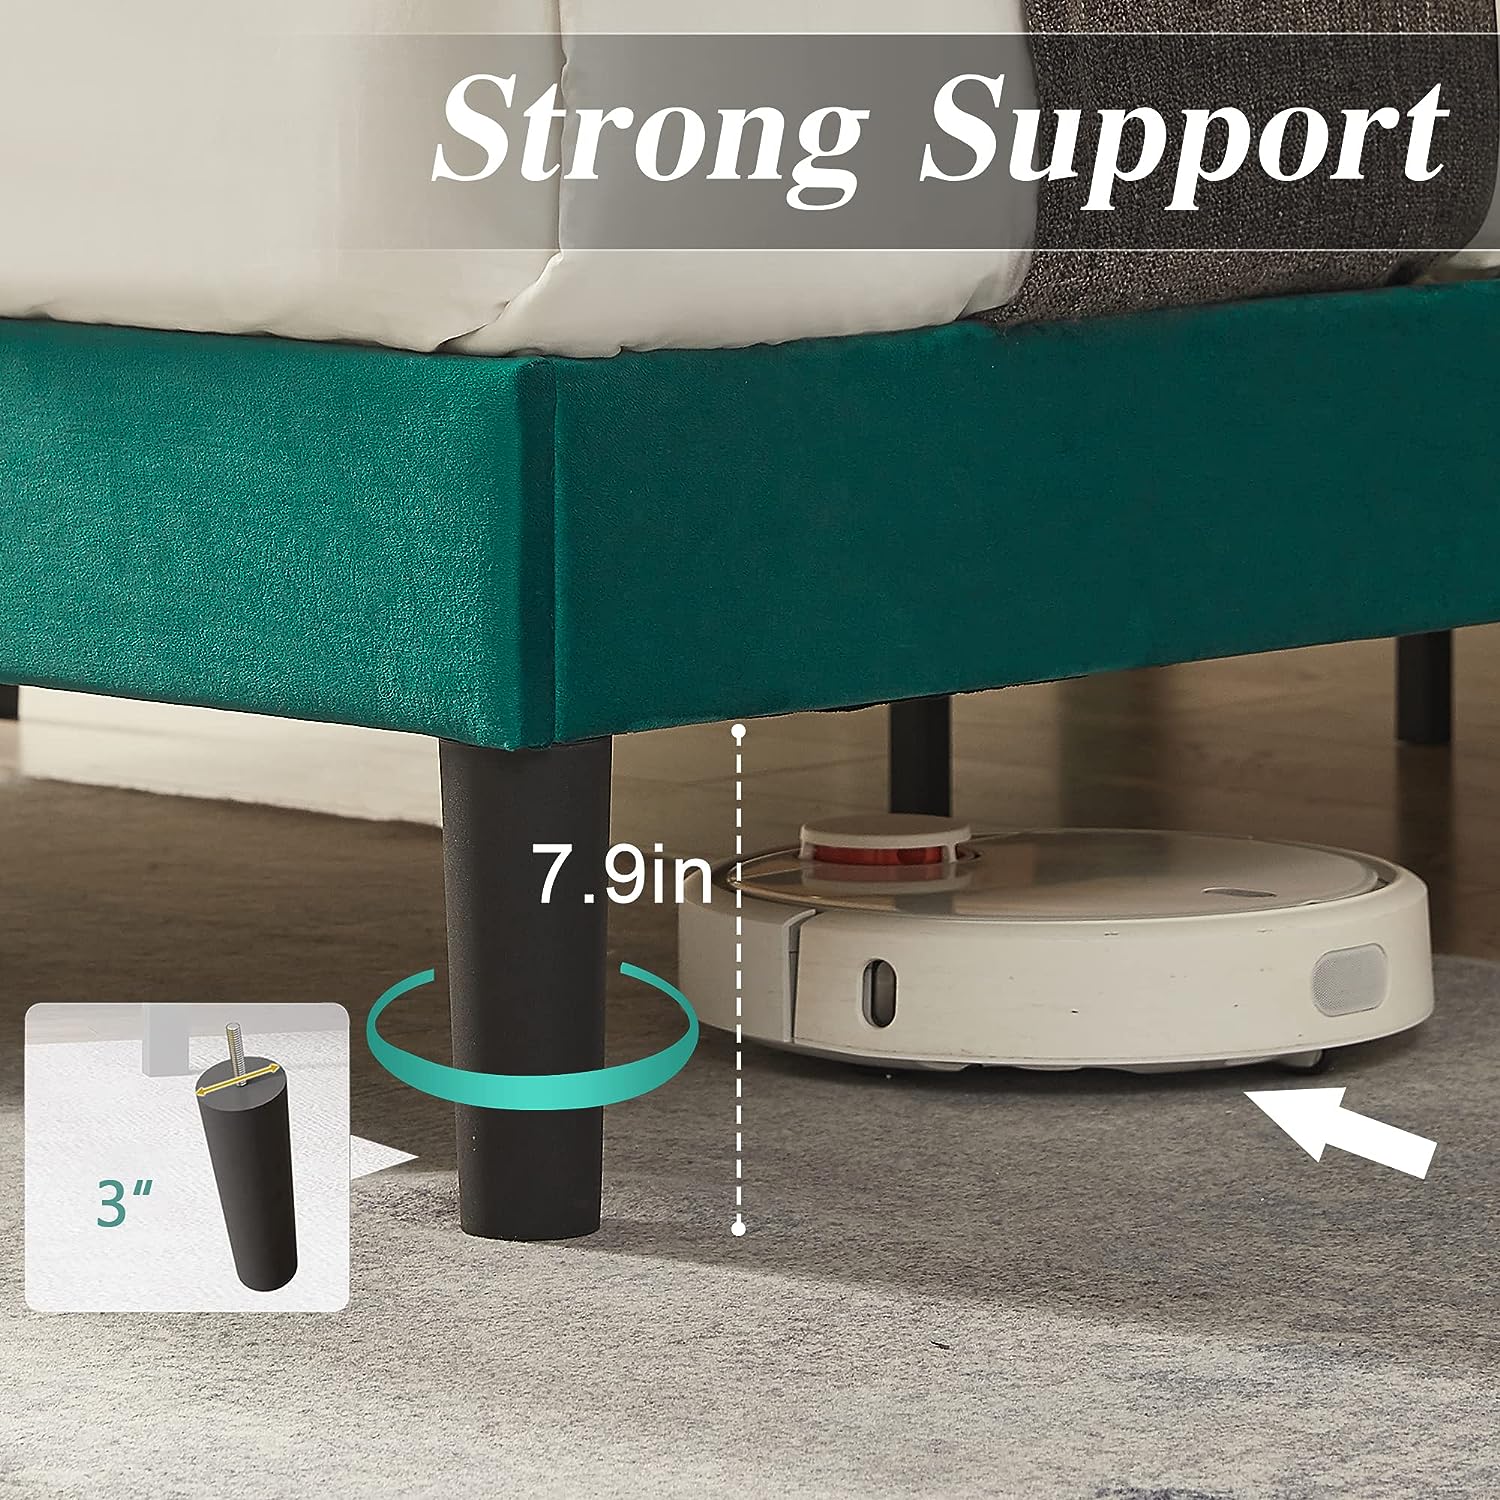 VECELO Modern Upholstered Platform Bedframe, Adjustable Headboard No Box Spring Needed